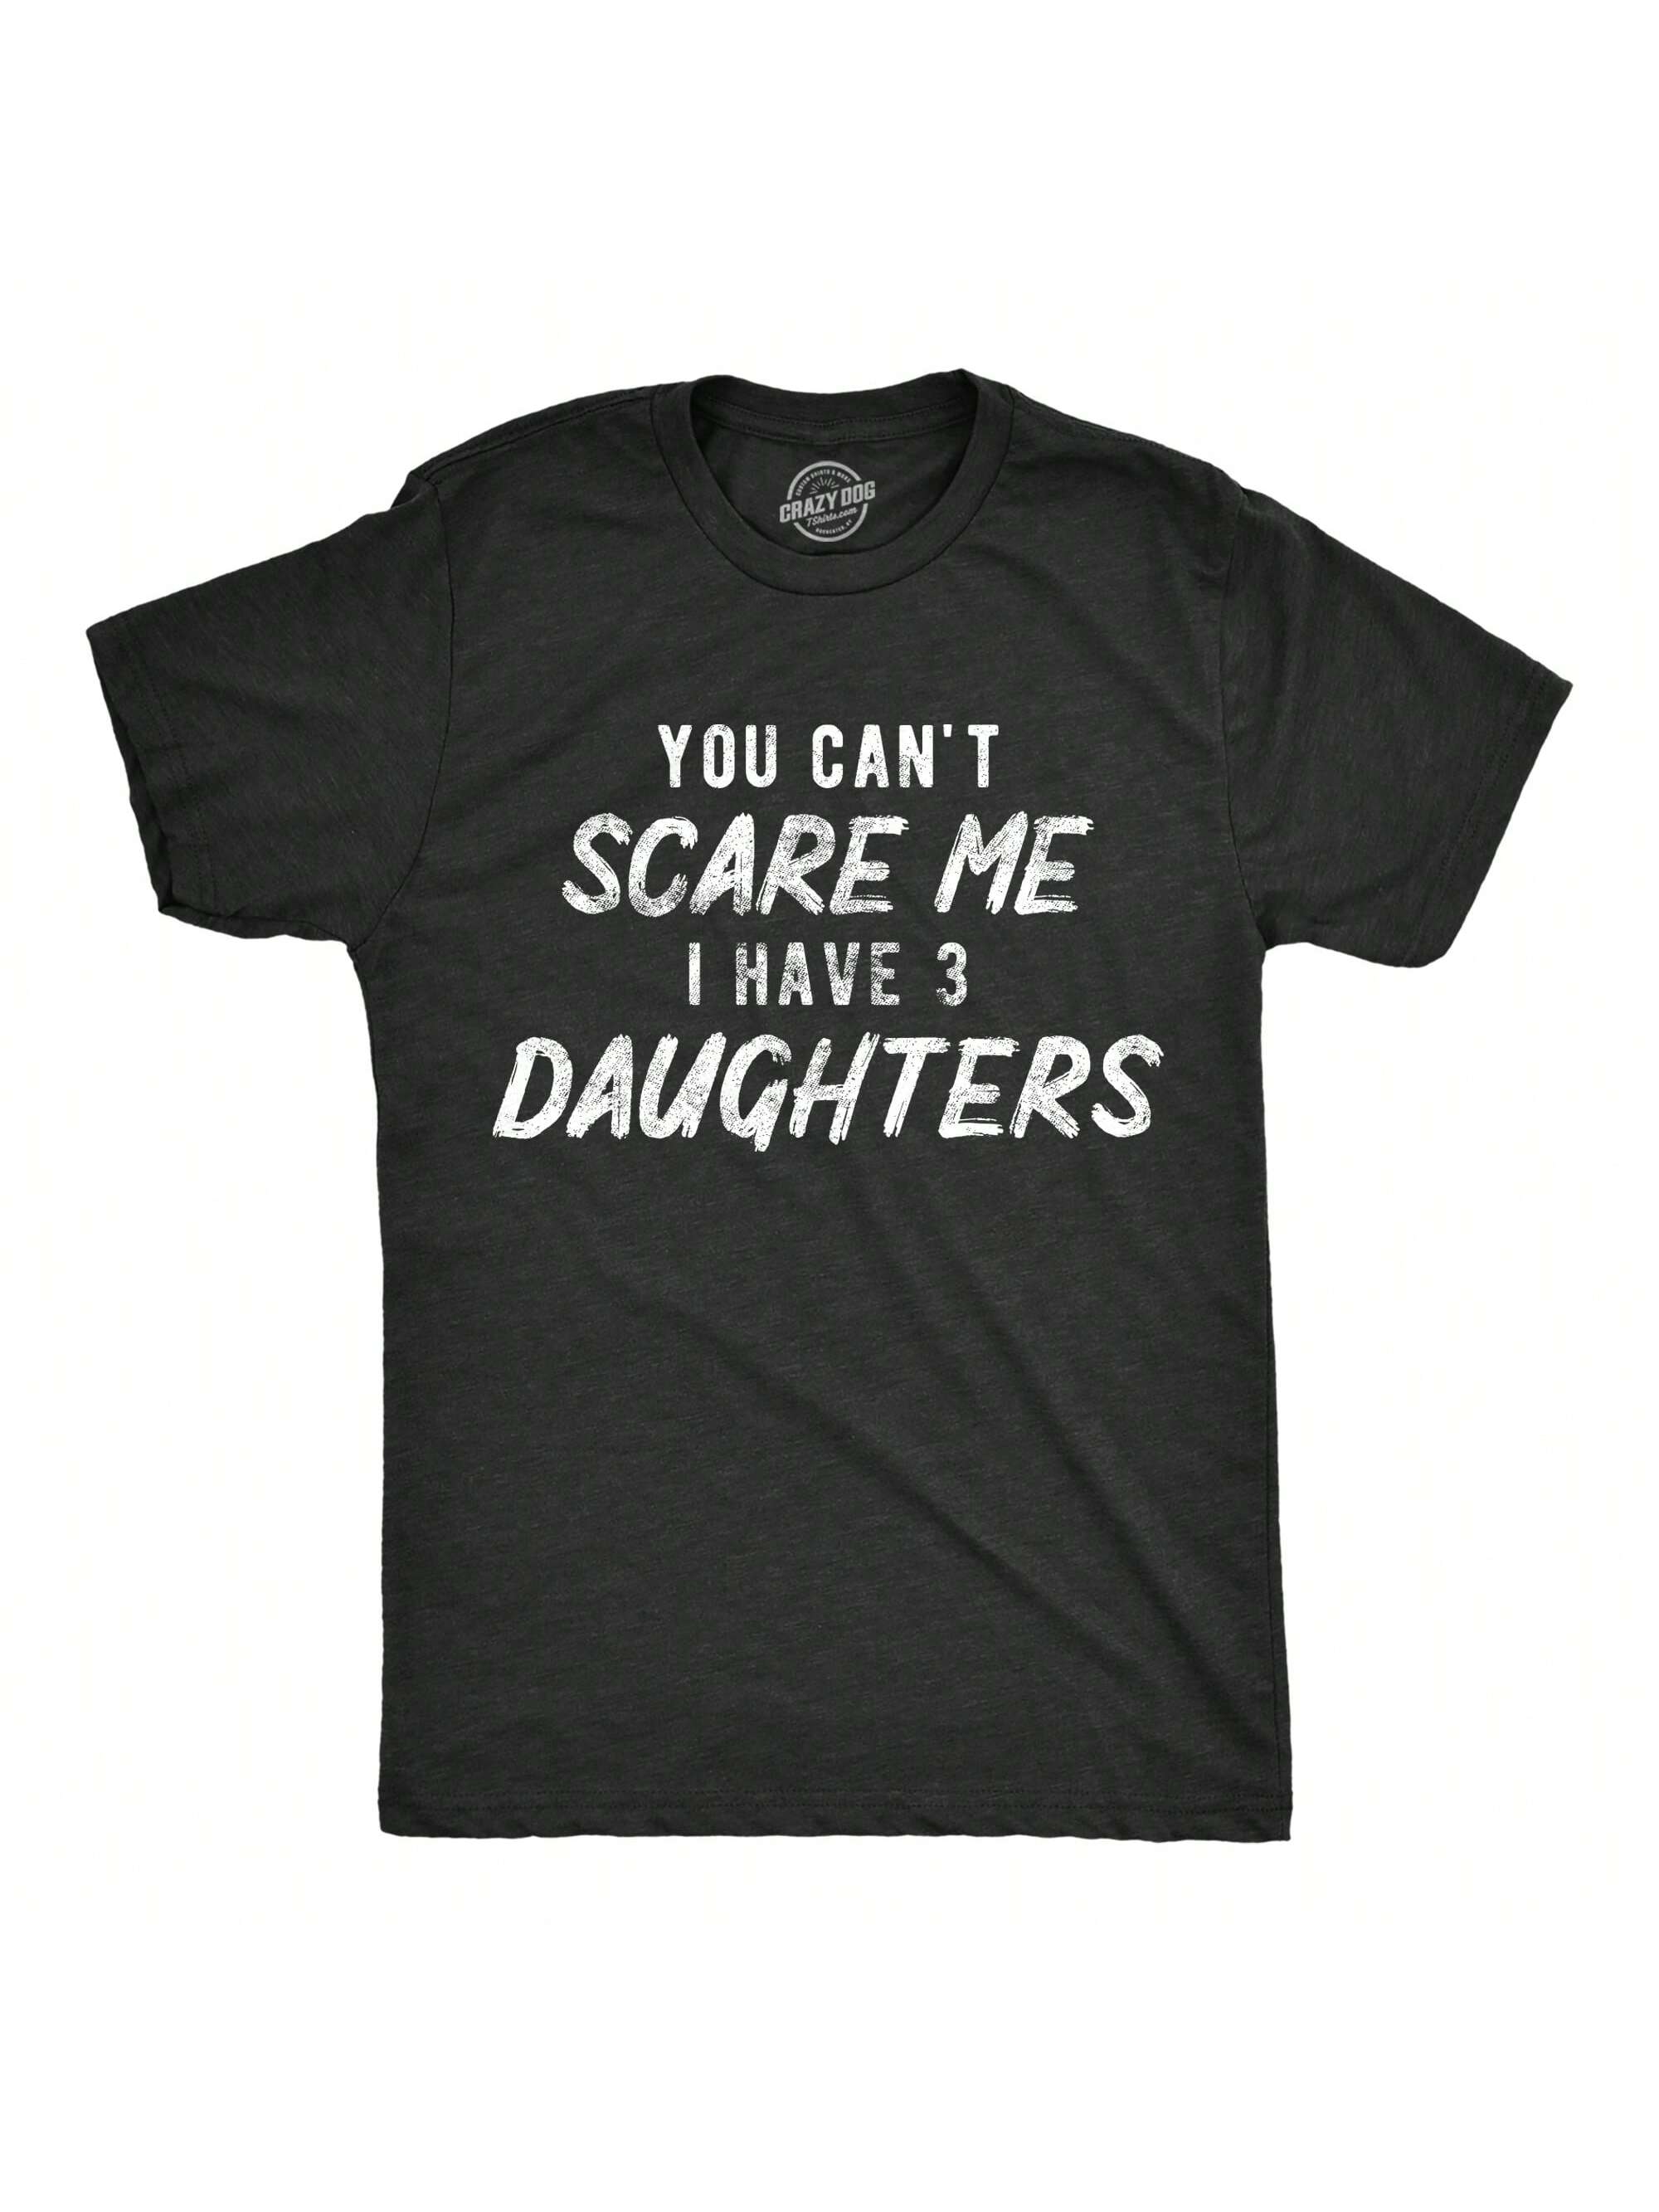 Мужская футболка «Ты не напугаешь меня, хизер блэк - три дочери